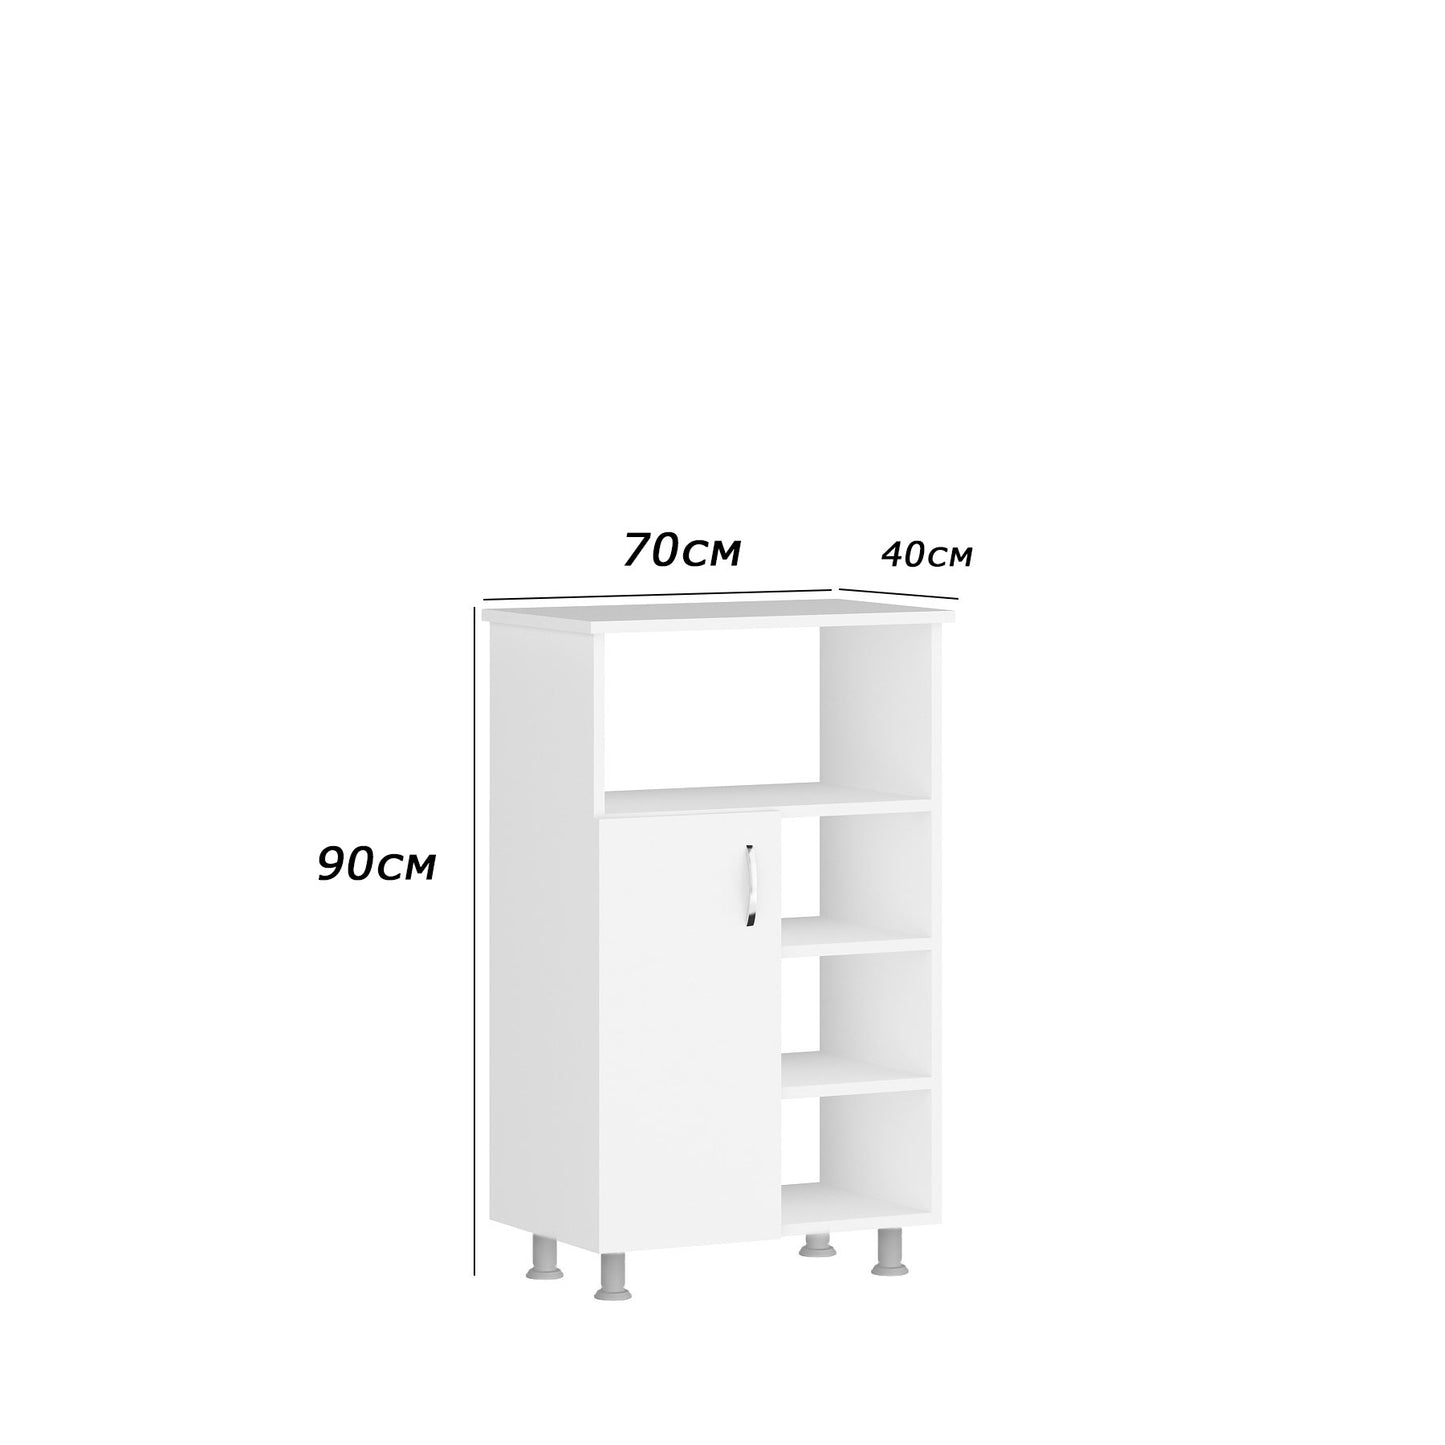 وحدة تخزين مطبخ 90×70سم- FAN58